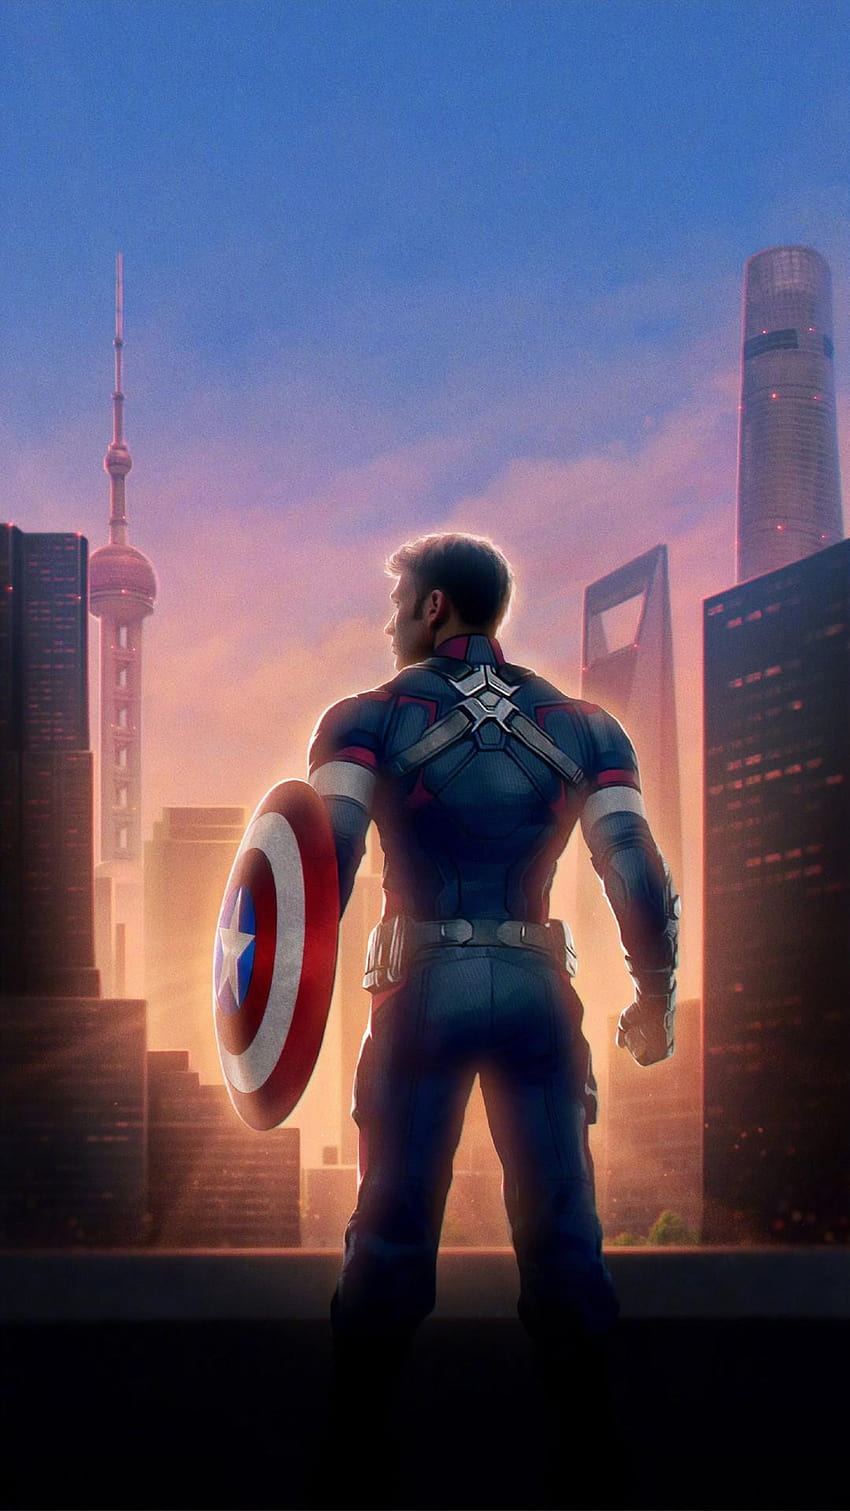 Captain America Avengers Endgame For iPhone, marvel avengers captain america HD phone wallpaper